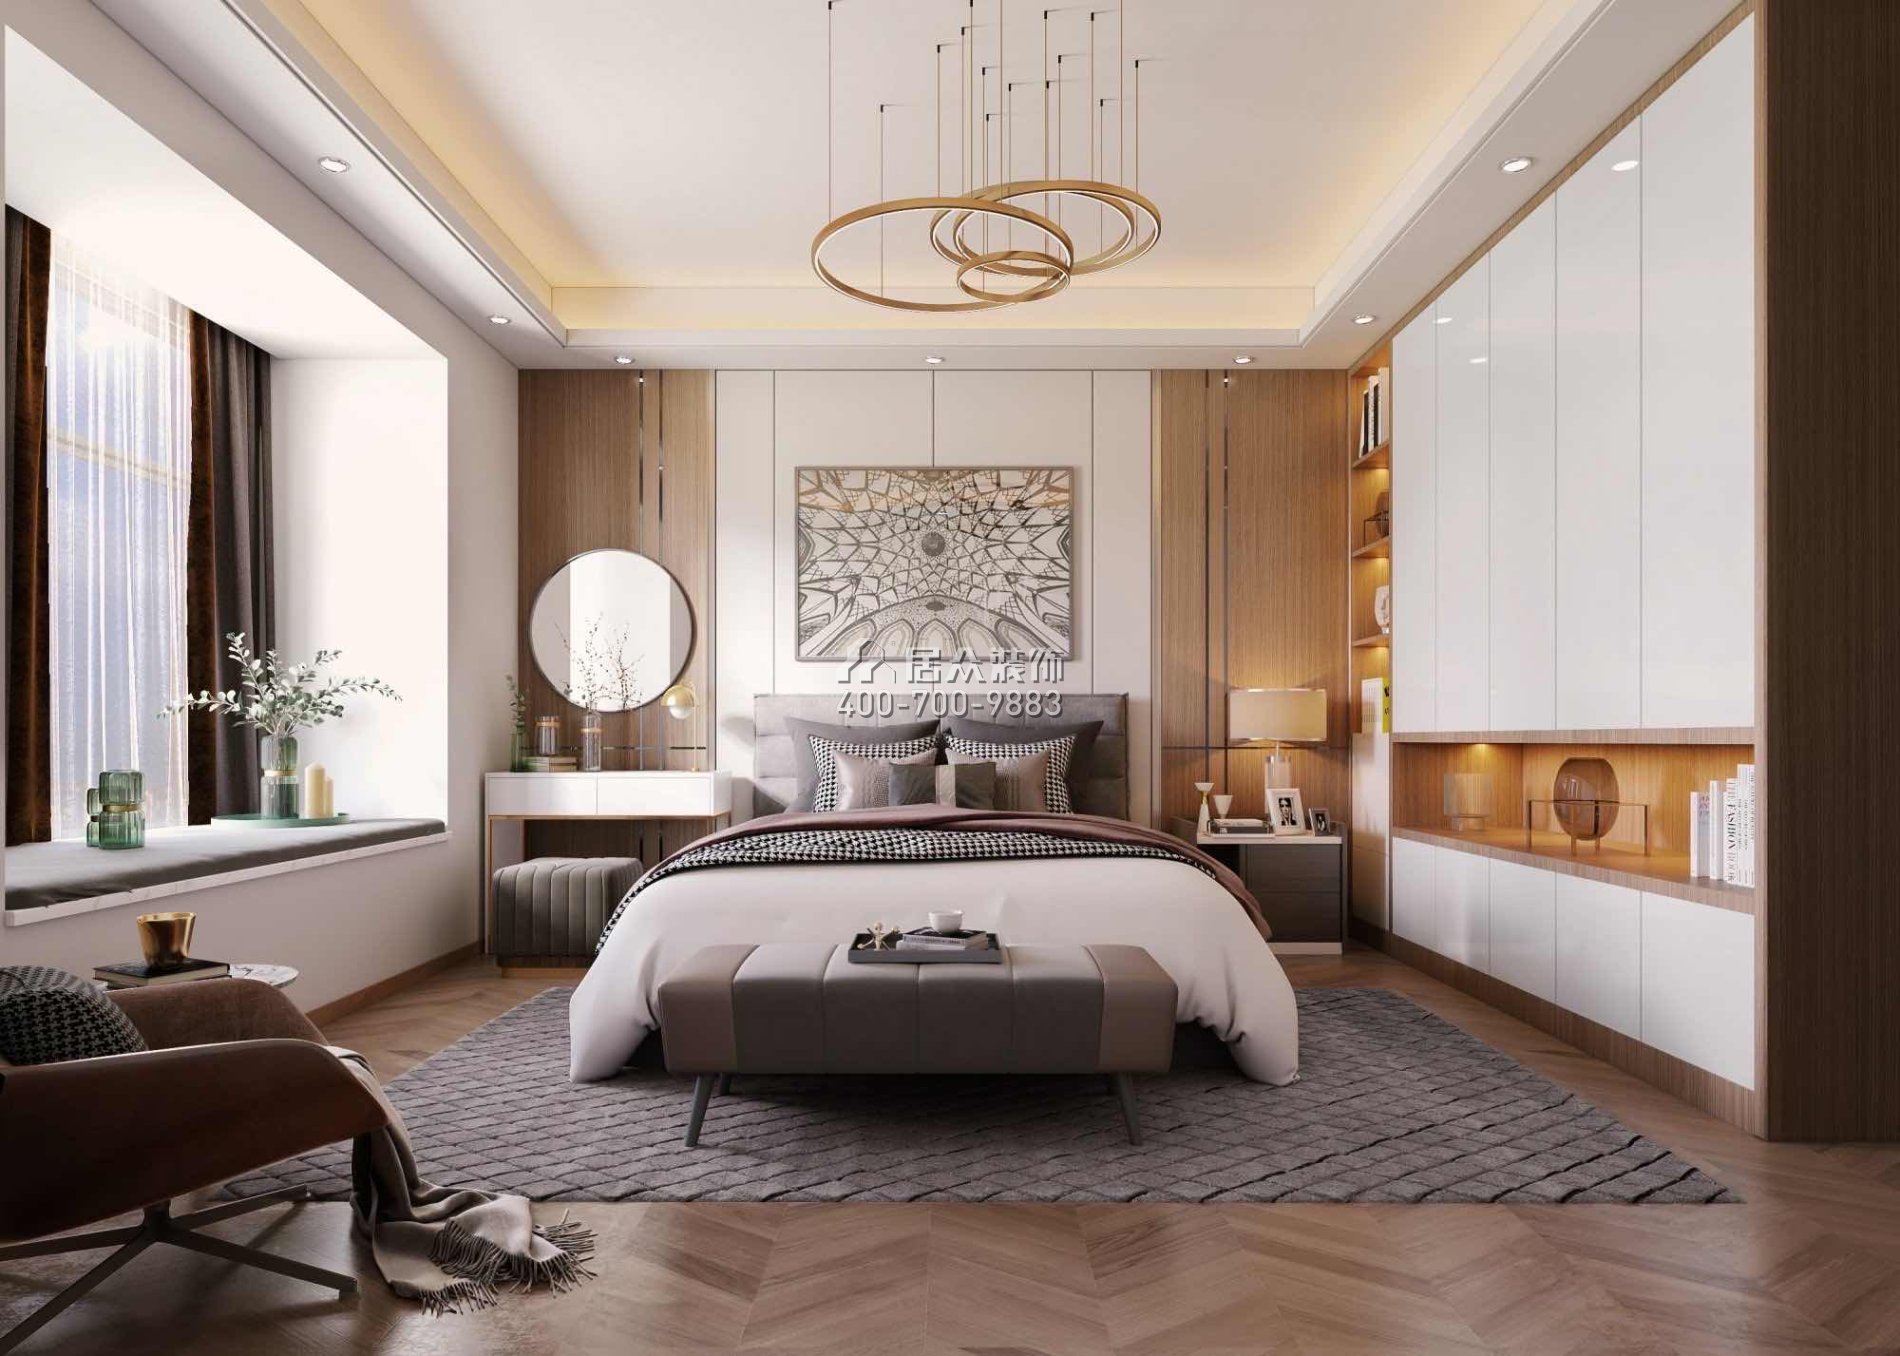 尚東領御216平方米現代簡約風格平層戶型臥室裝修效果圖